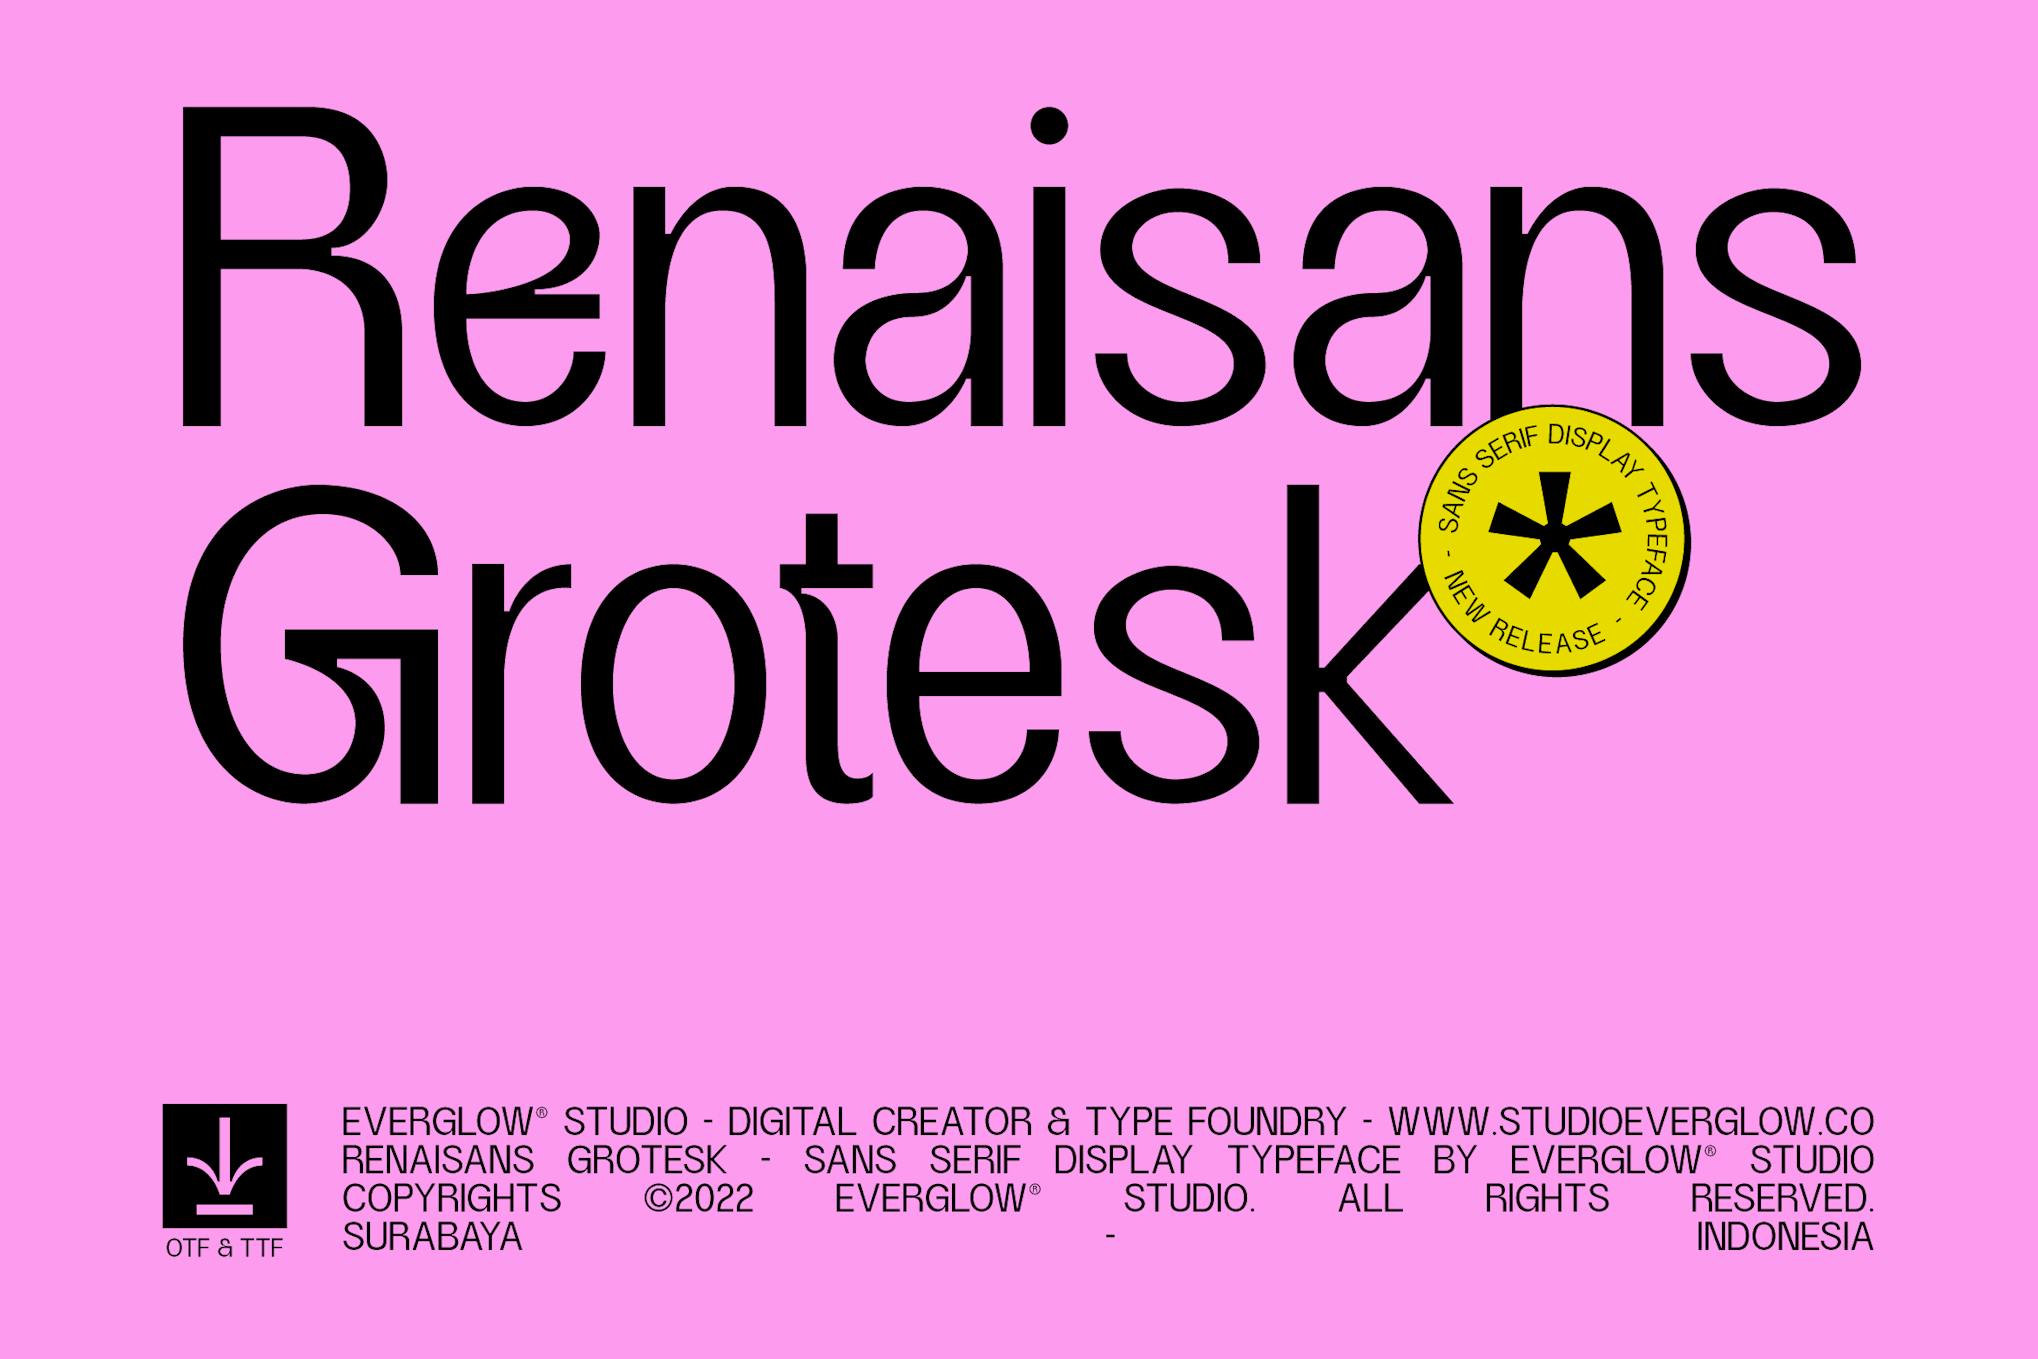 Renaisans Grotesk - Greek Letter Font